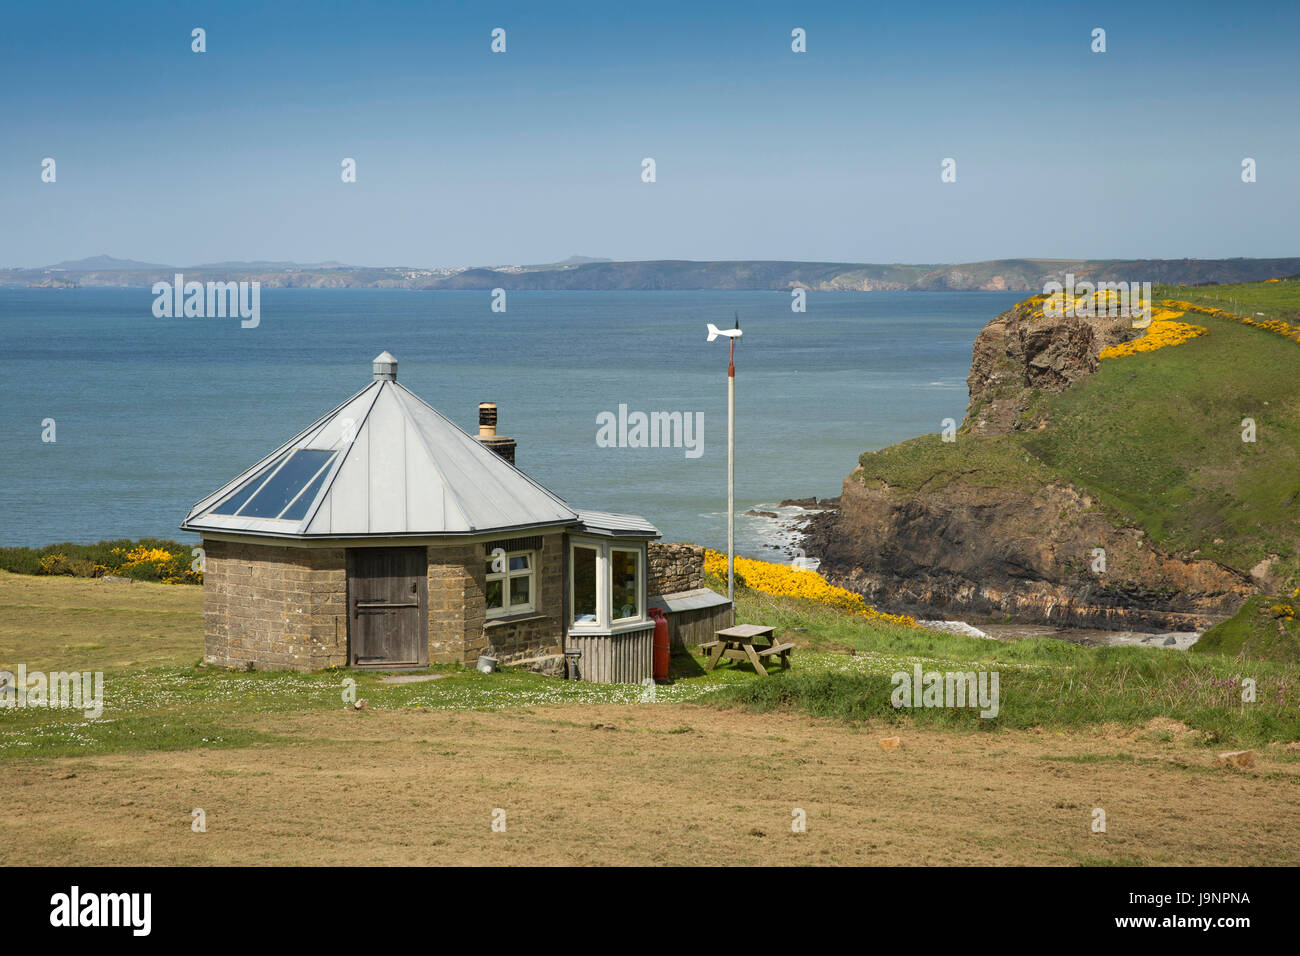 UK, Wales, Pembrokeshire, Druidston, octagonal former croquet pavilion above cliffs Stock Photo